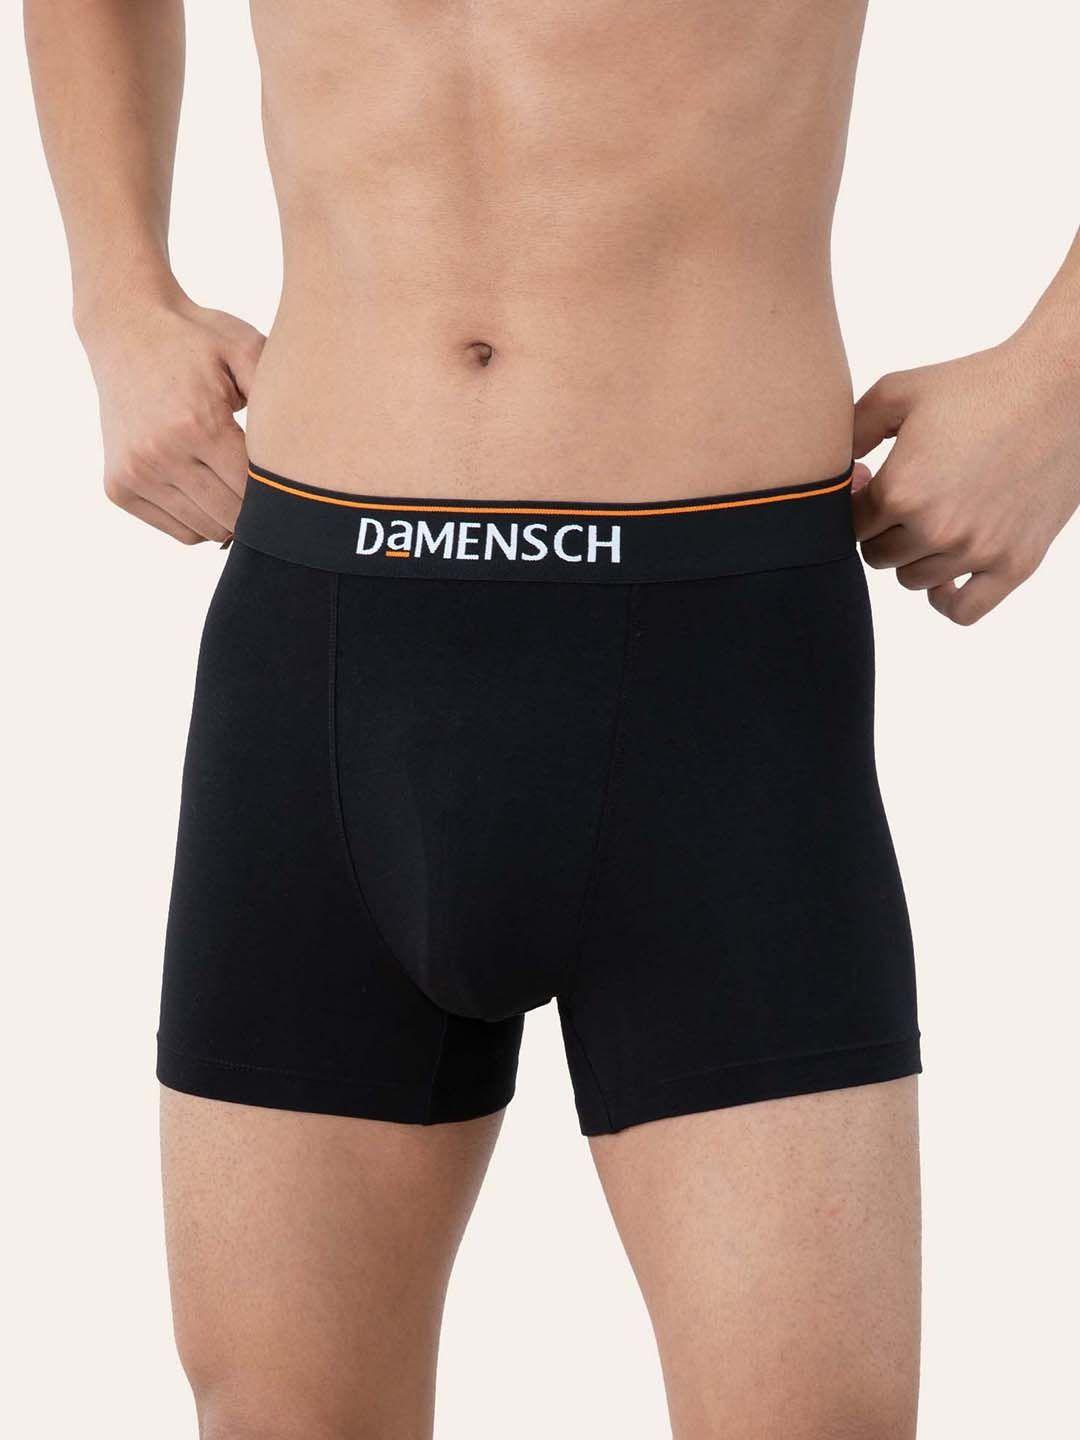 damensch-men-deo-cotton-solid-trunk